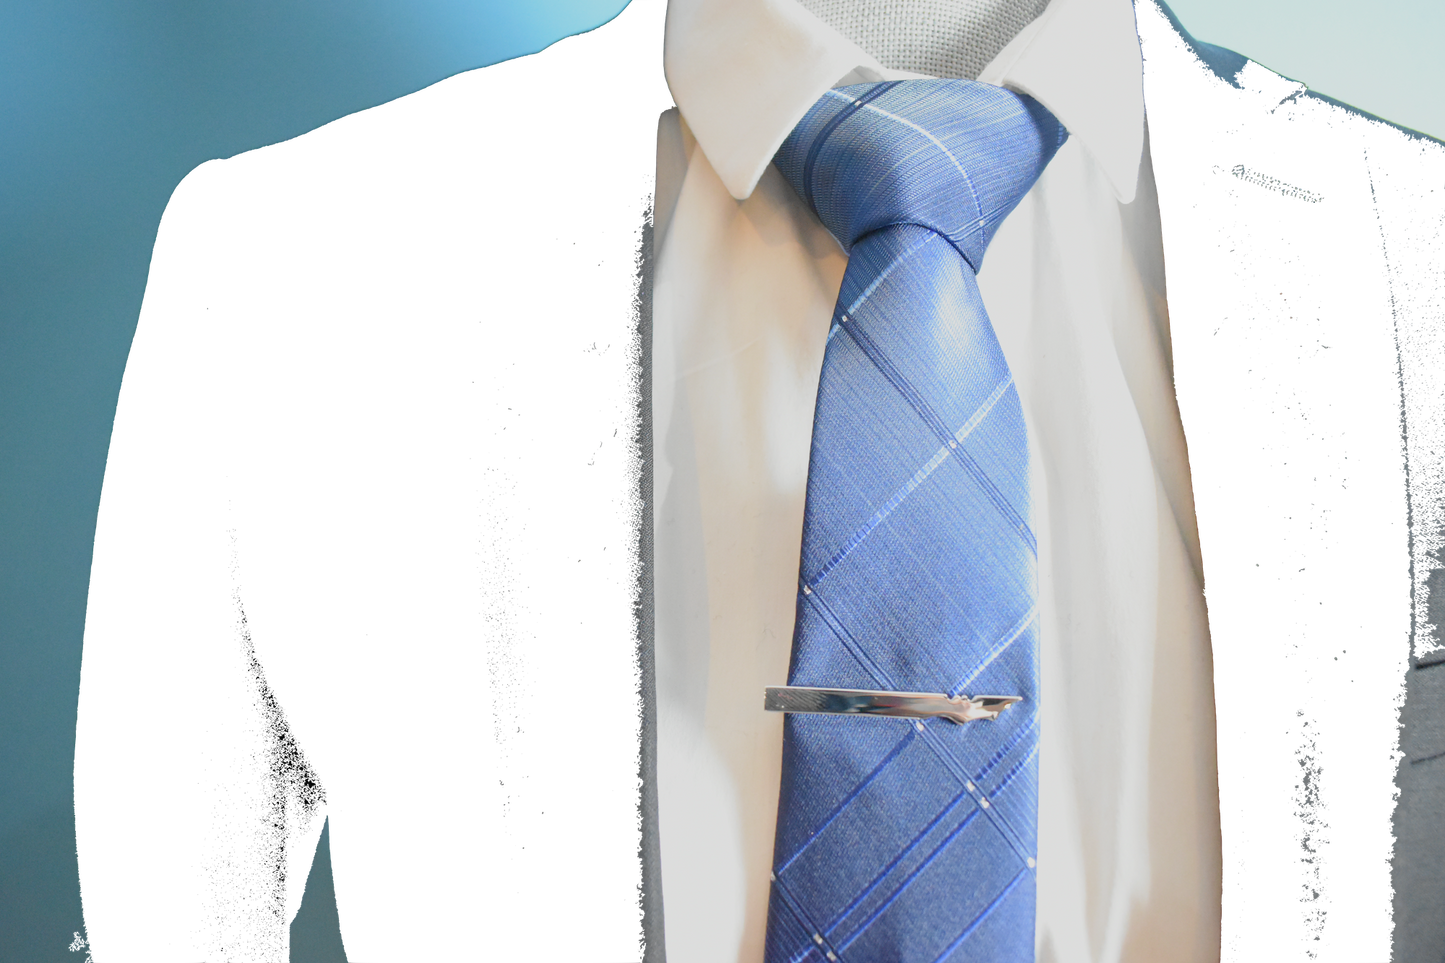 Zegami Men Tie "Navy Blue with Diamonds Design"